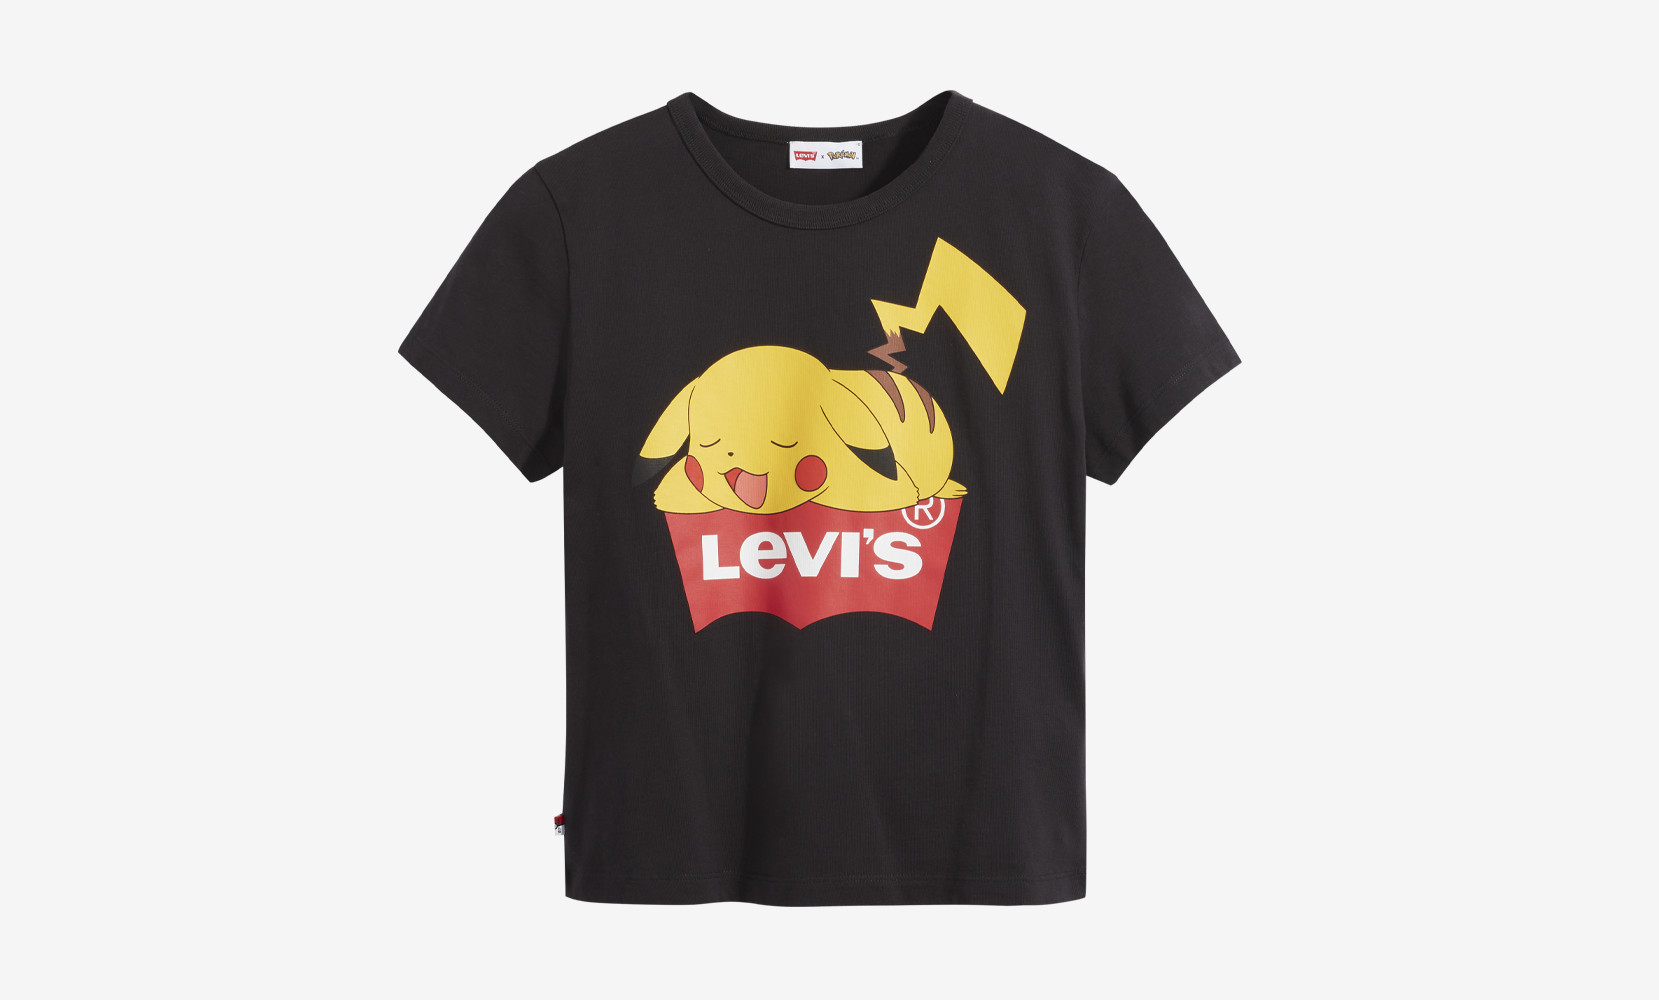 Pokémon x Levis capsule collection